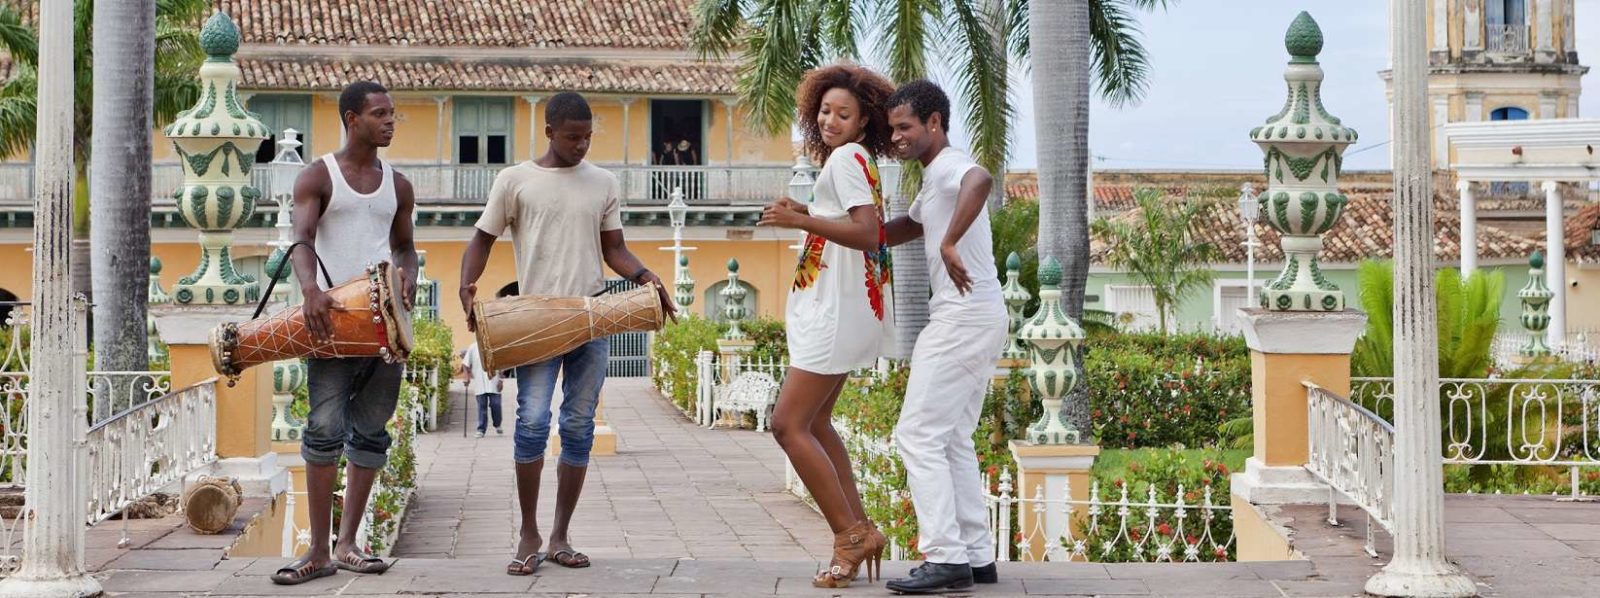 dancing in trinidad cuba